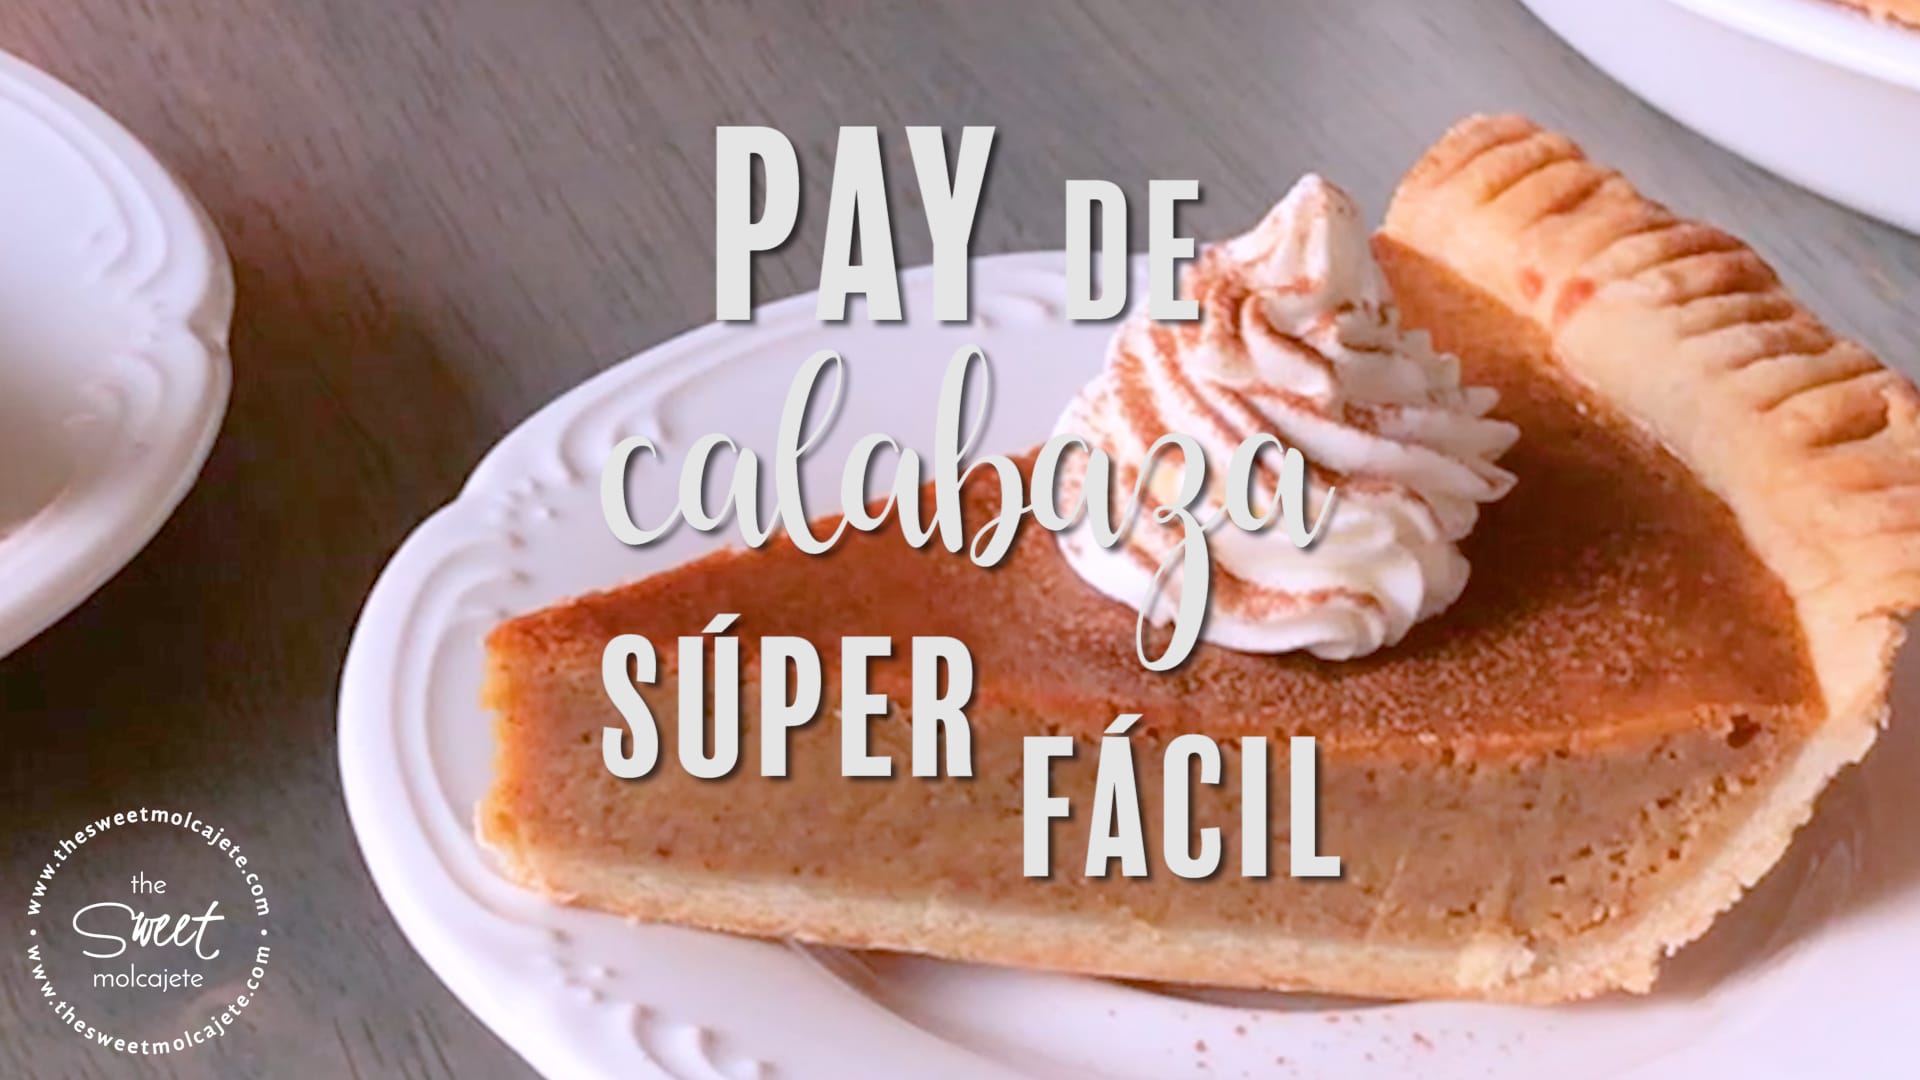 PAY DE CALABAZA SÚPER FÁCIL - the sweet molcajete